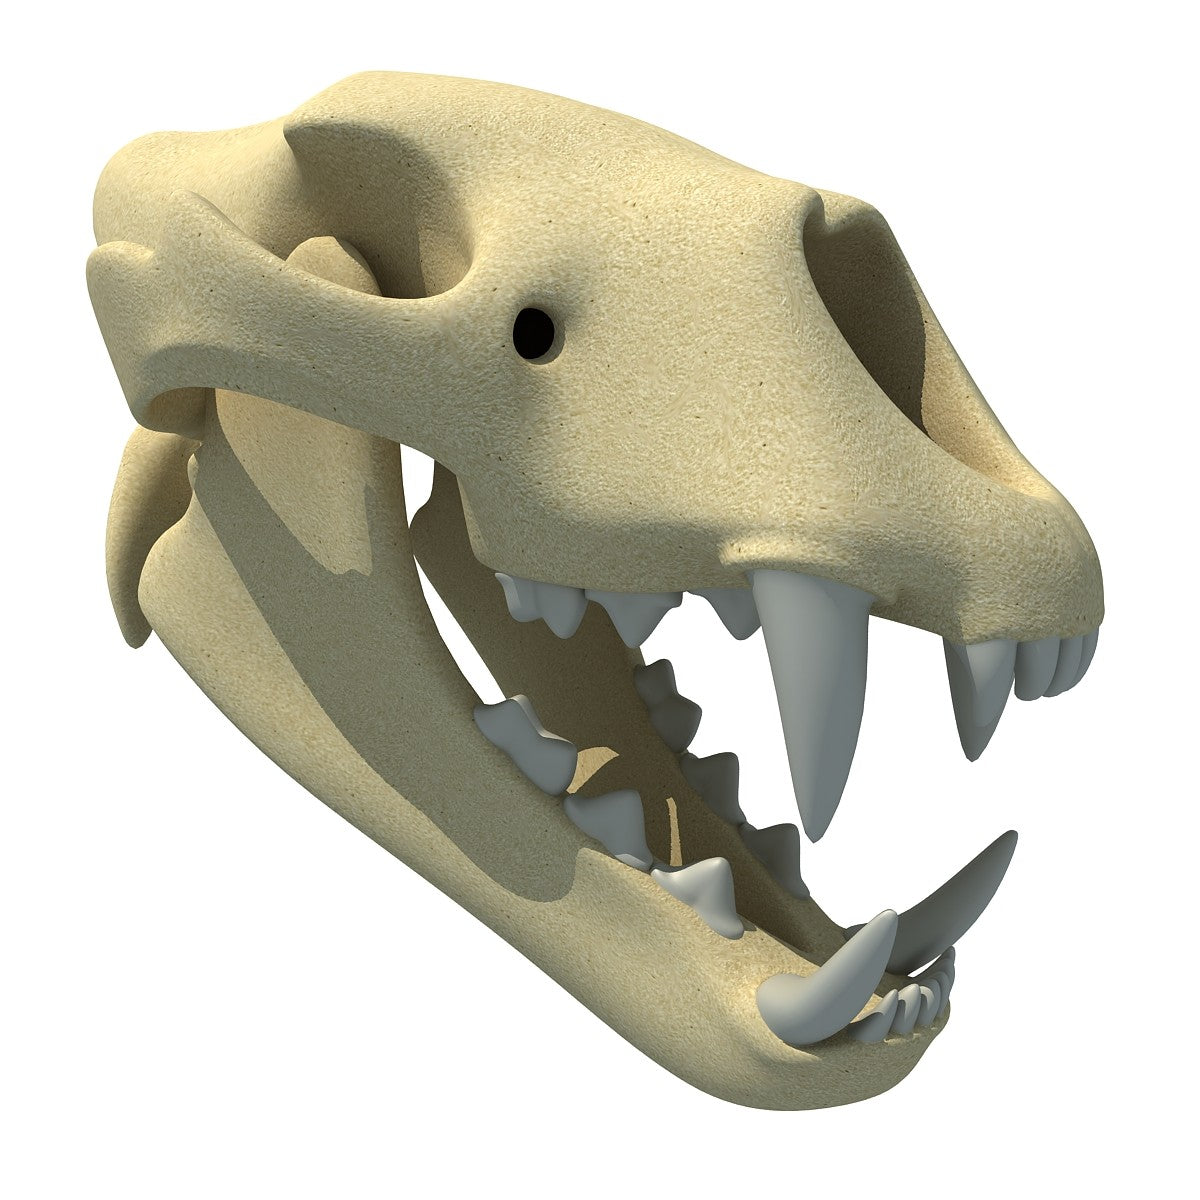 Lion Skull 3D Model